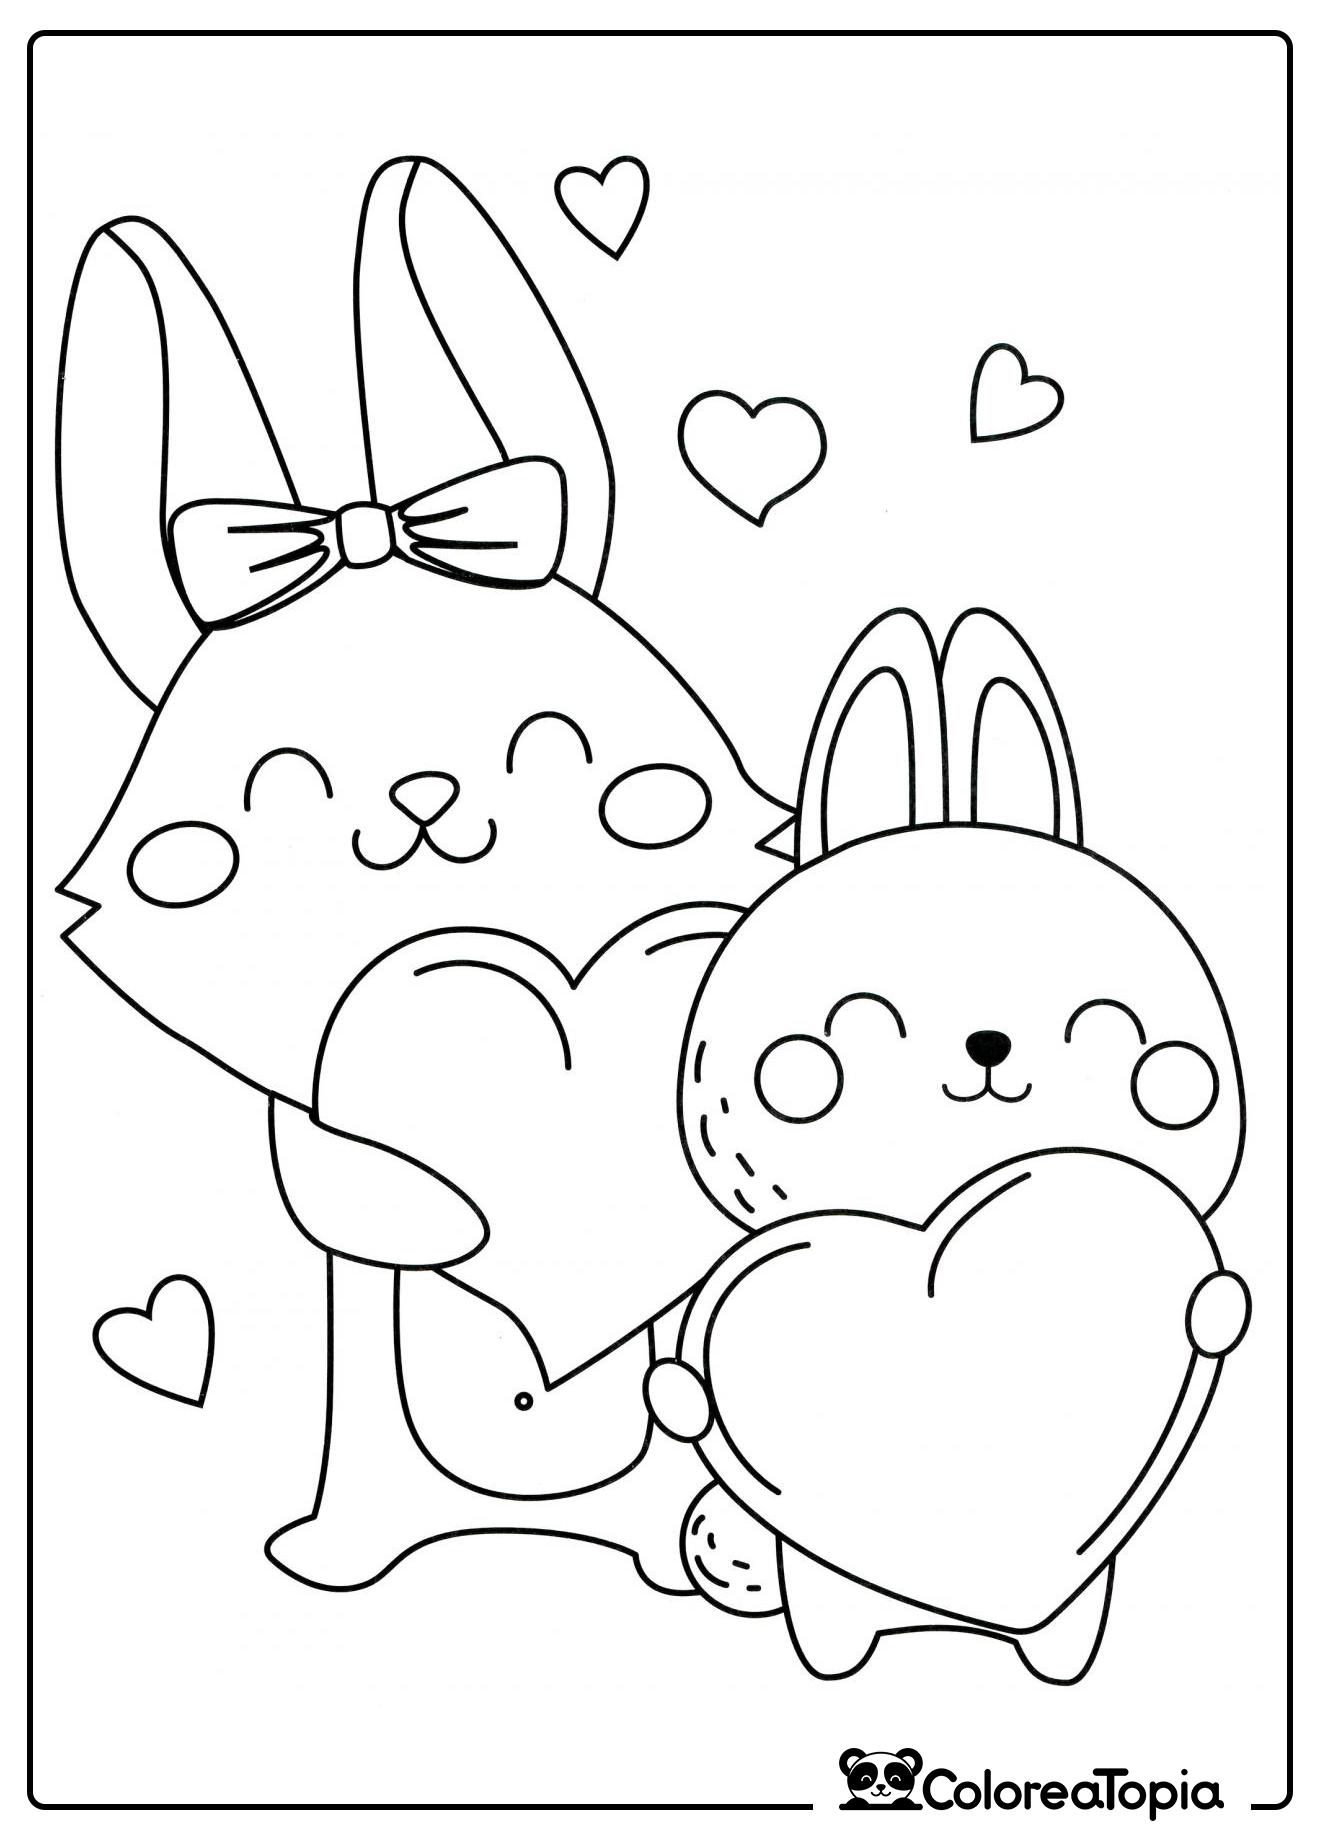 Conejitos con corazones - dibujo para colorear